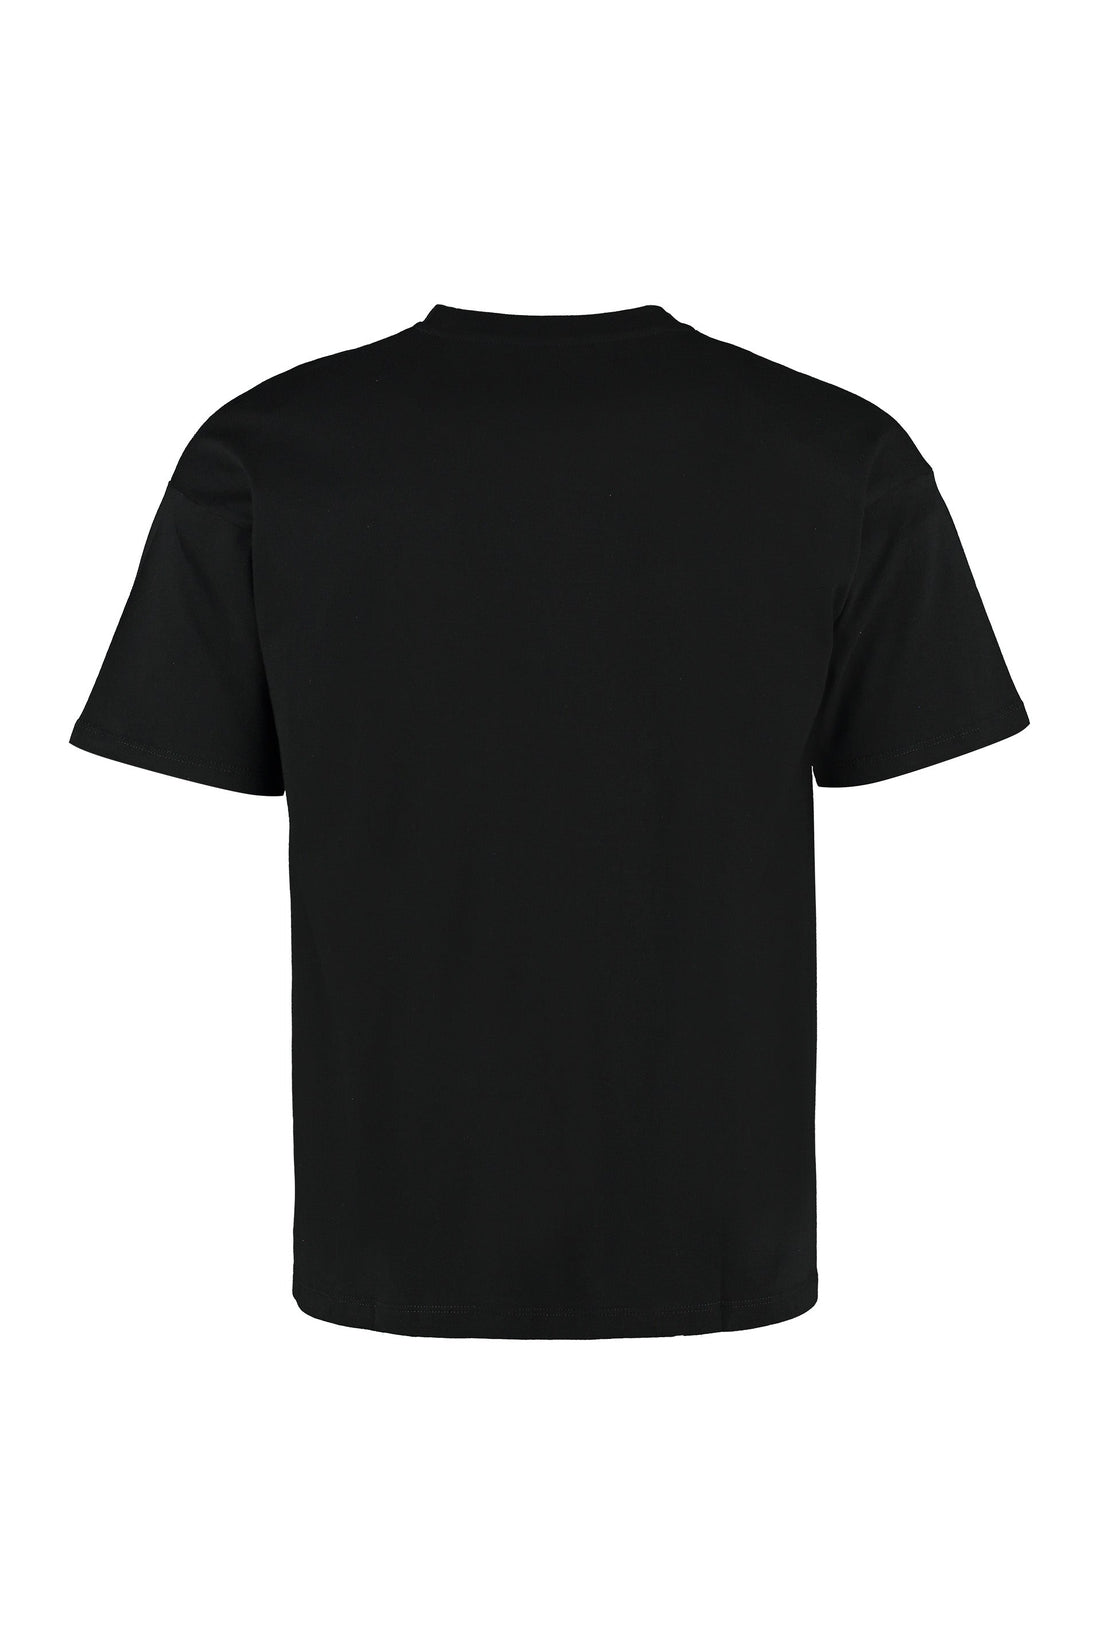 Carhartt-OUTLET-SALE-Logo cotton T-shirt-ARCHIVIST